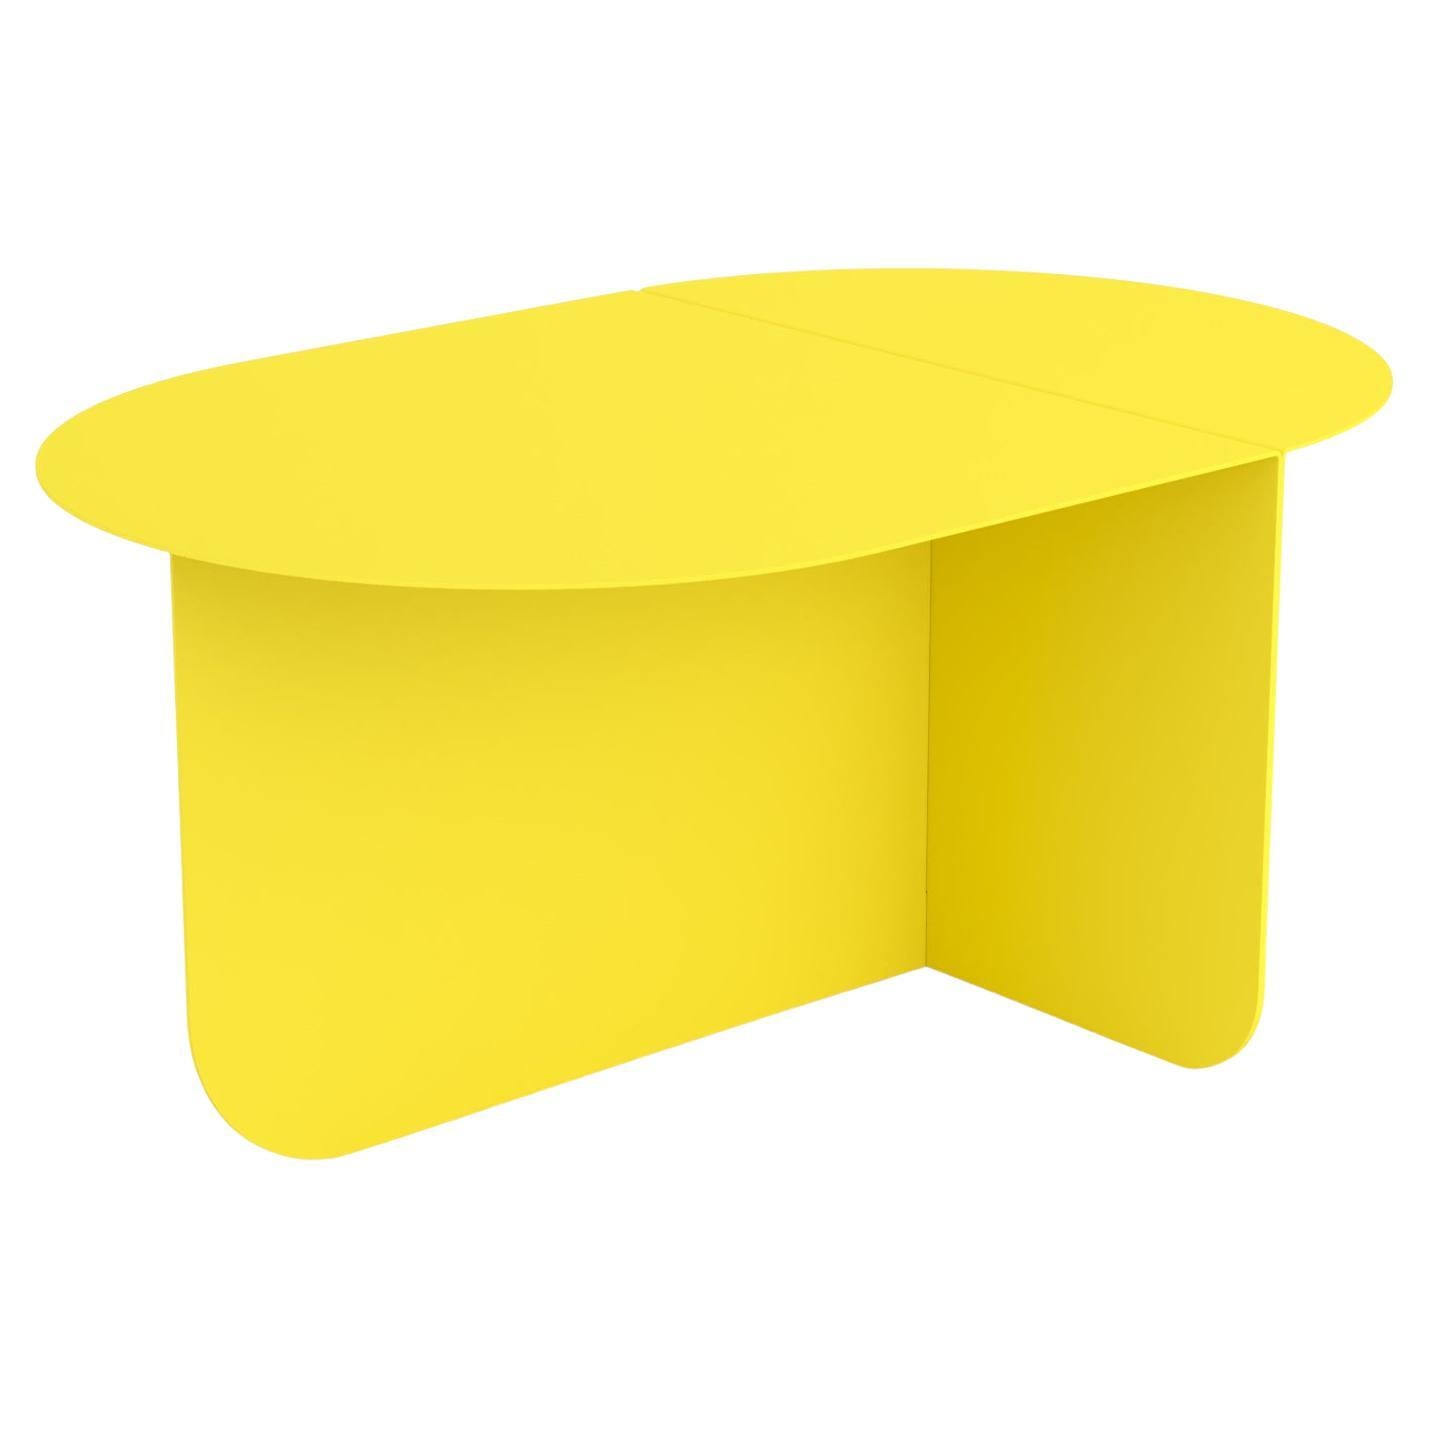 Couleur, table basse ovale moderne, Ral 1016 - Sulfur Yellow, par Bas Vellekoop